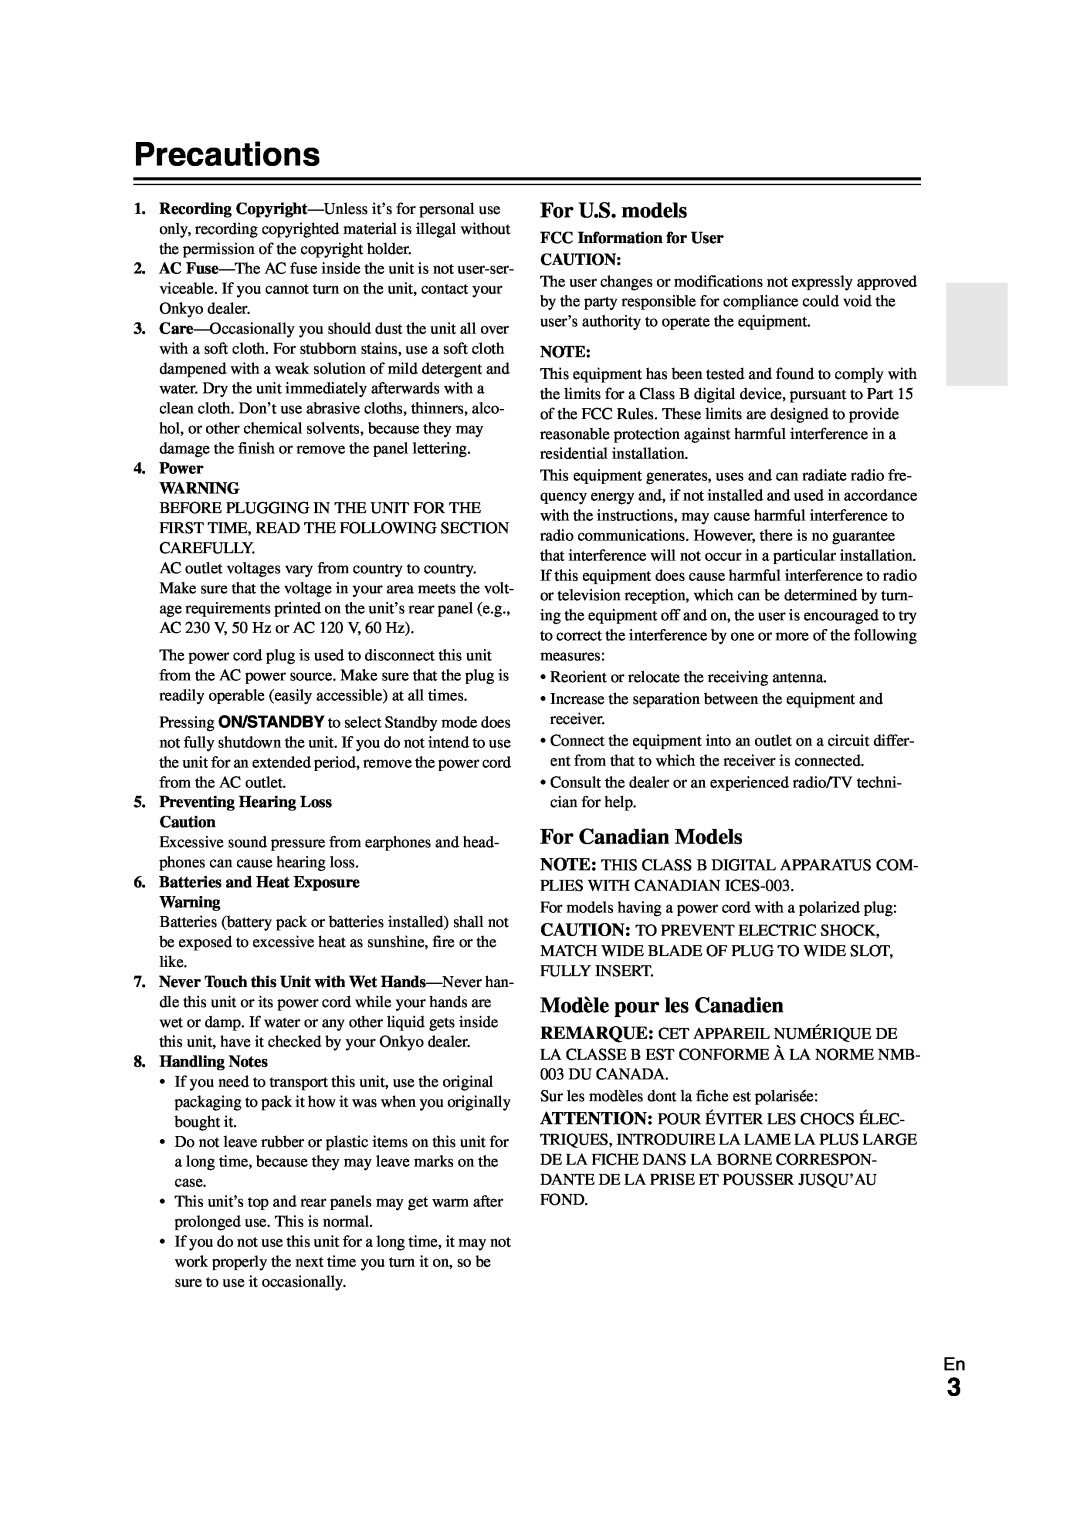 Onkyo HT-S7300 instruction manual Precautions, For U.S. models, For Canadian Models, Modèle pour les Canadien 